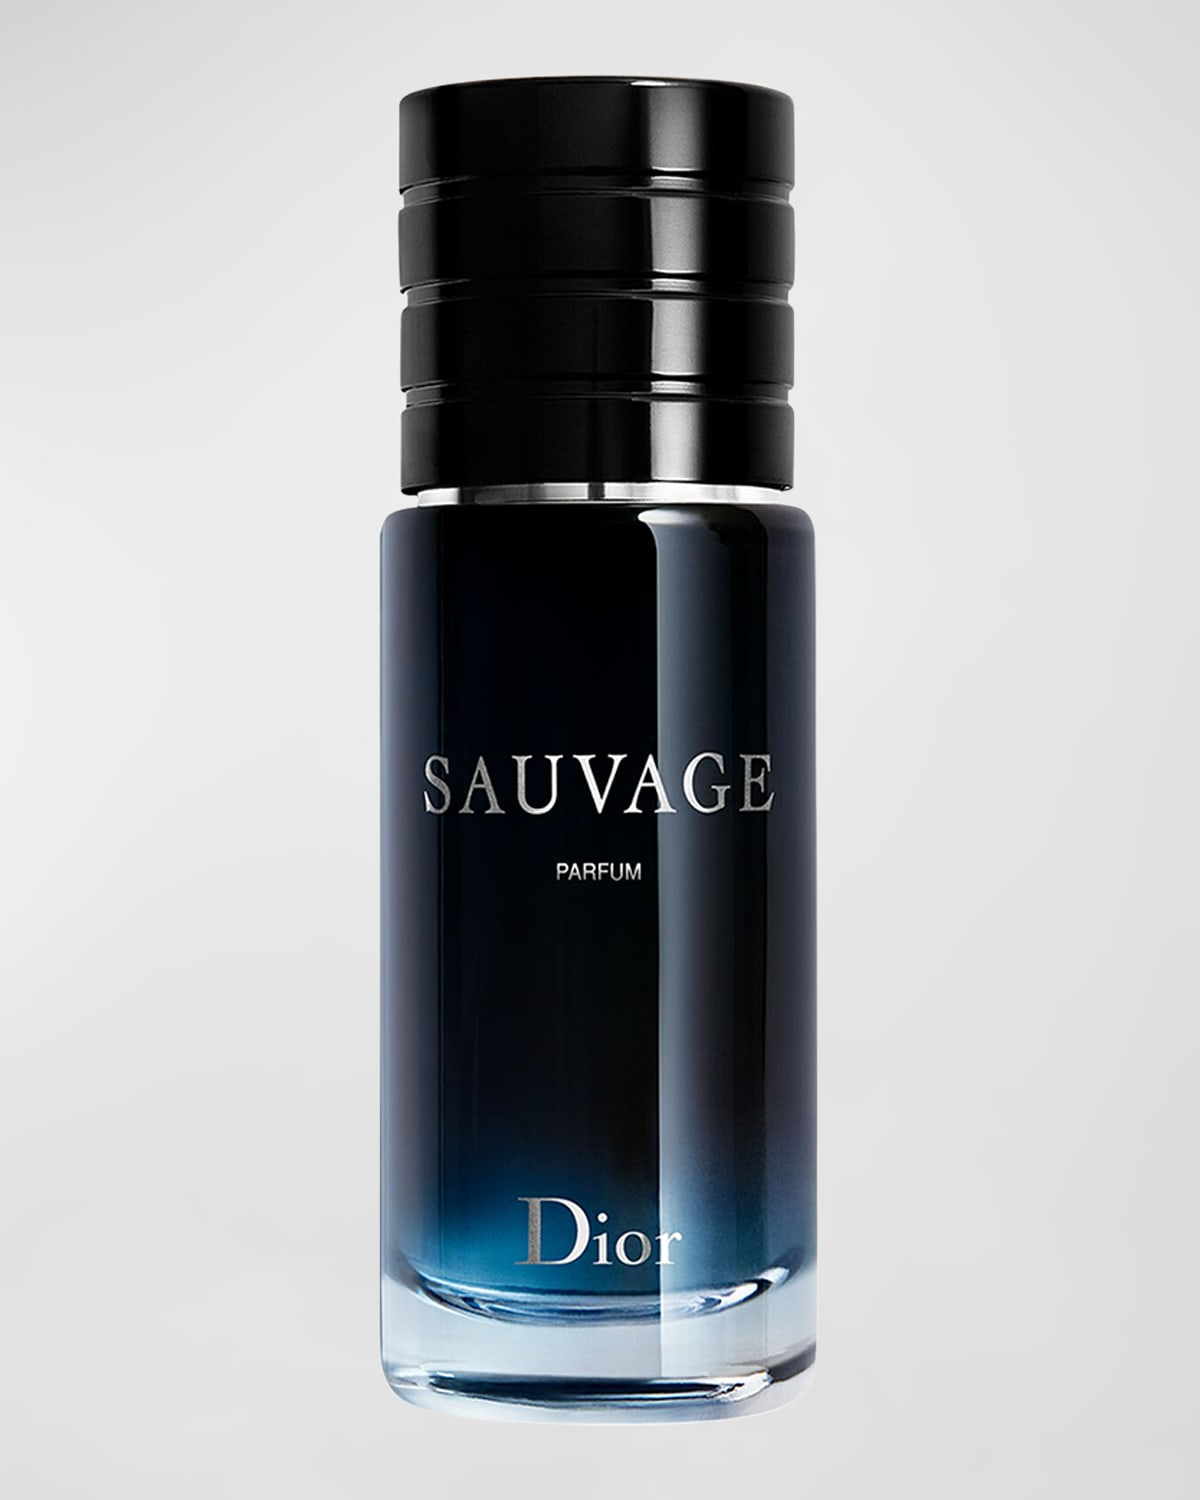 Sauvage Parfum, 1 oz.